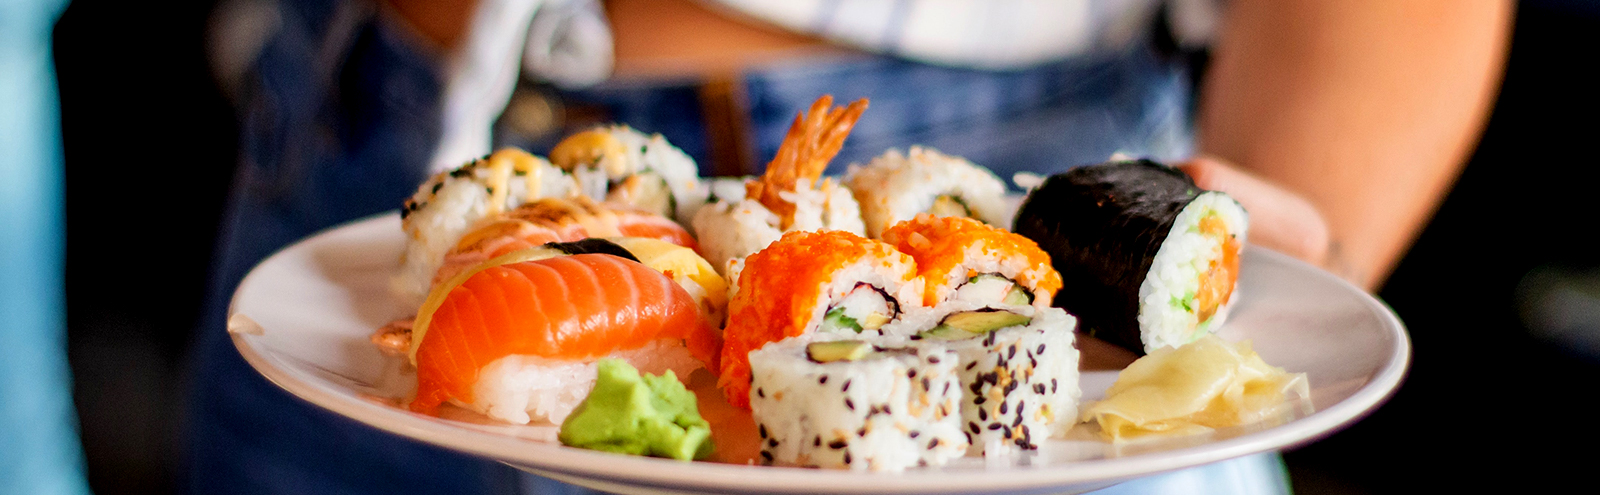 sushi-tfeat-uproxx.jpg